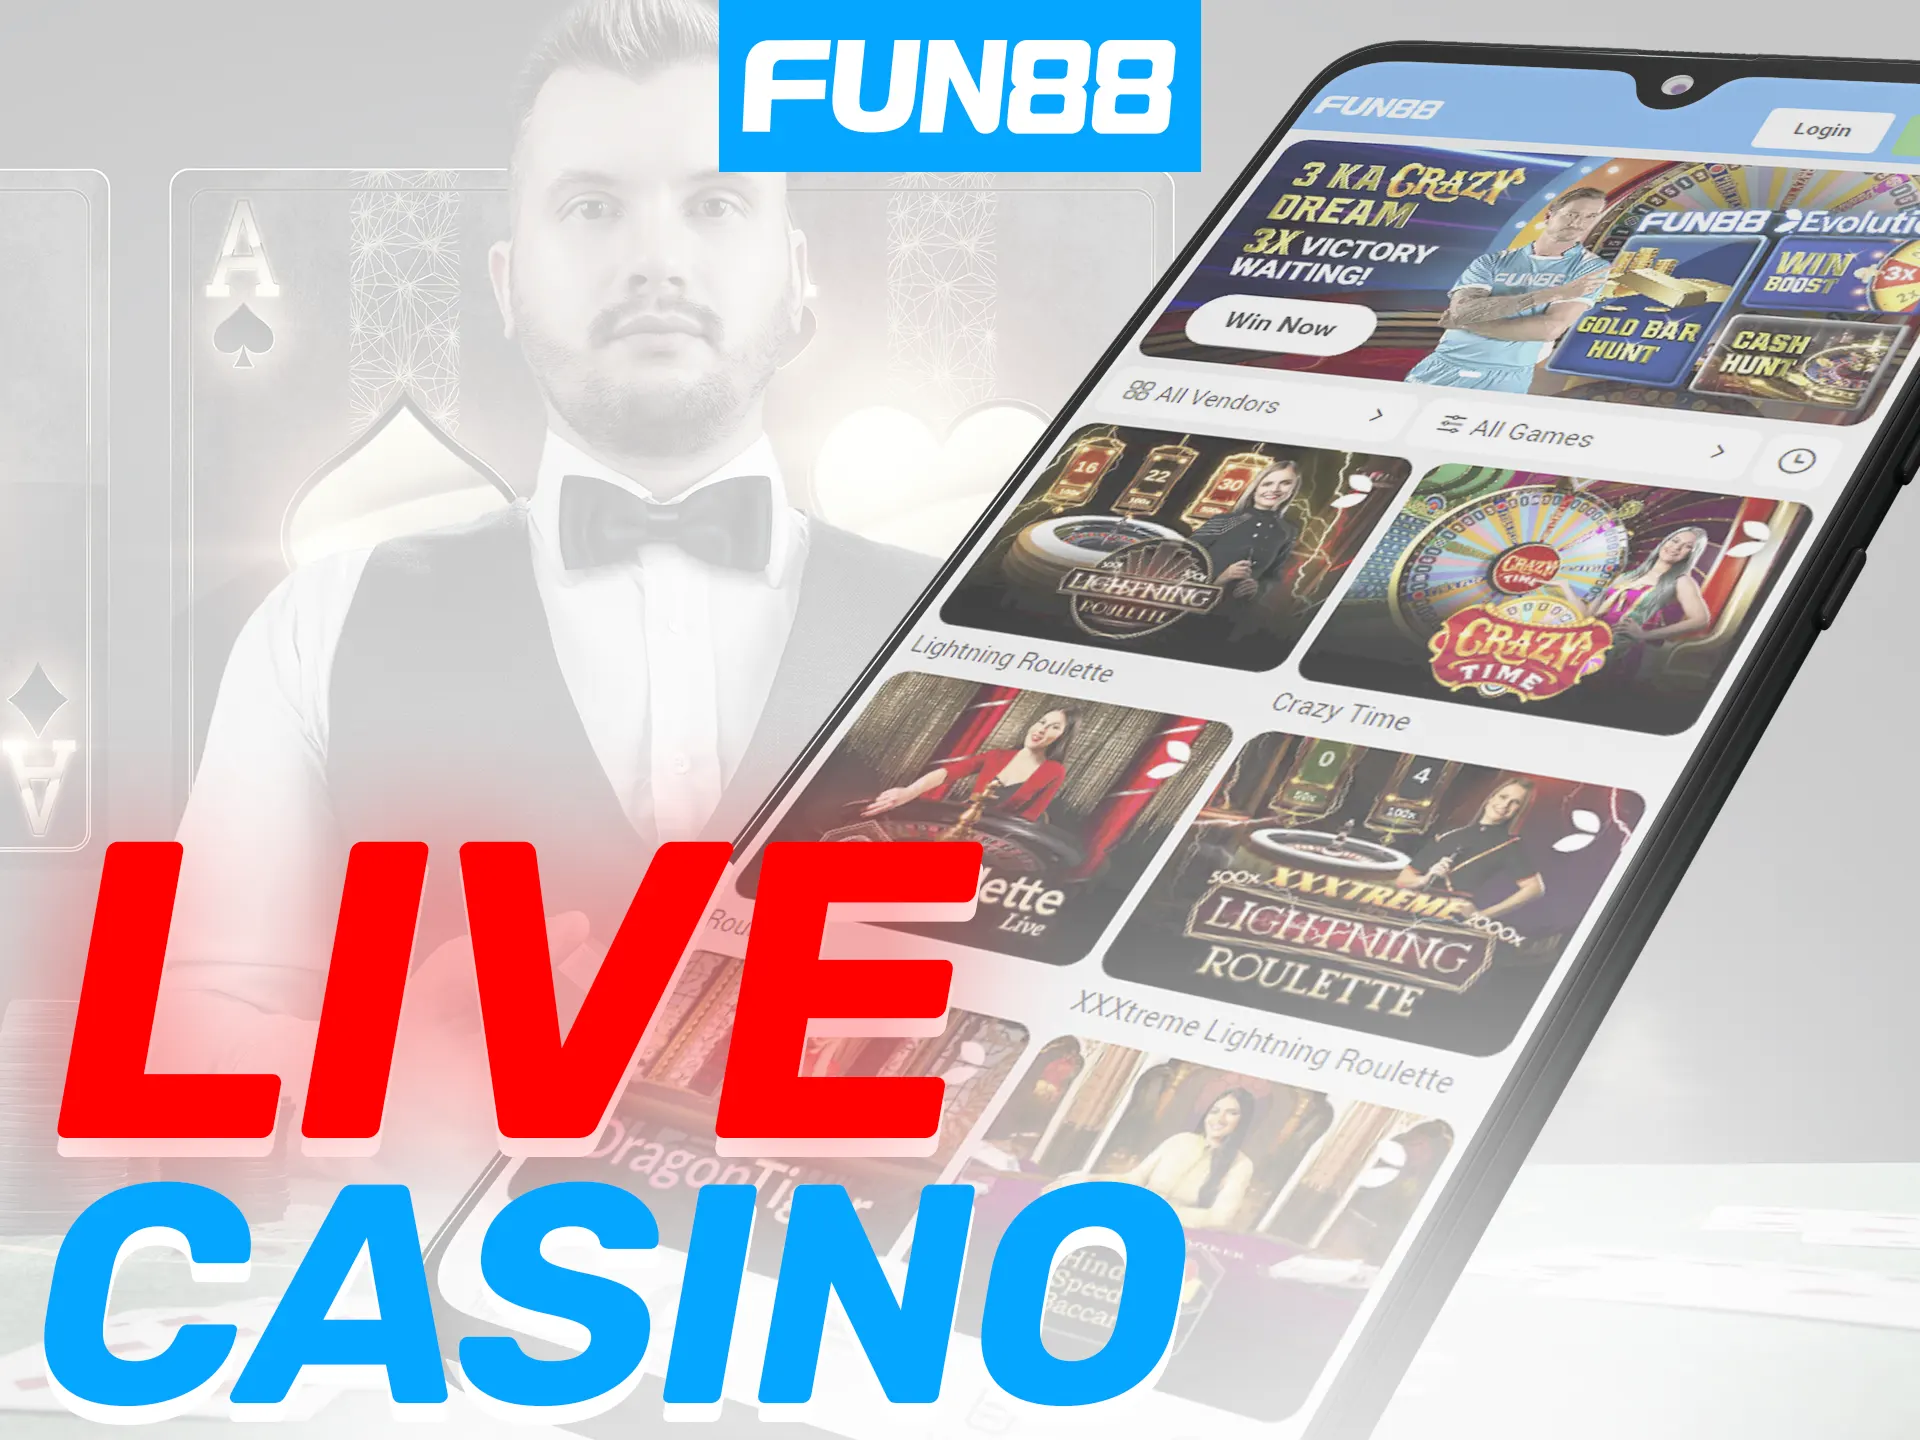 Fun88 app includes live dealer tables for Blackjack, Roulette, Andar Bahar, and Baccarat.